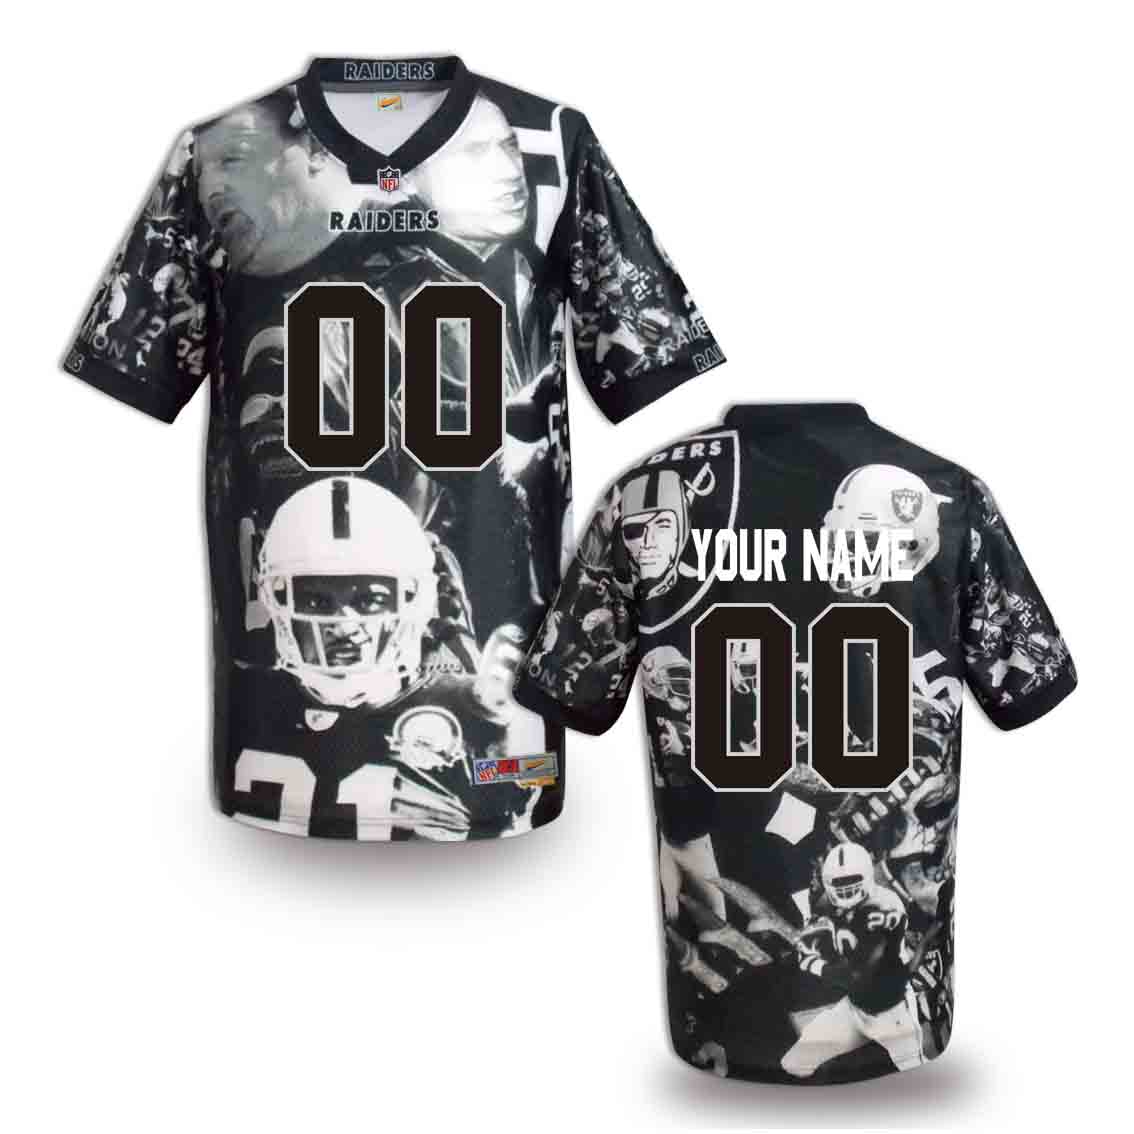 Nike Raiders Customized Fashion Stitched Jerseys03